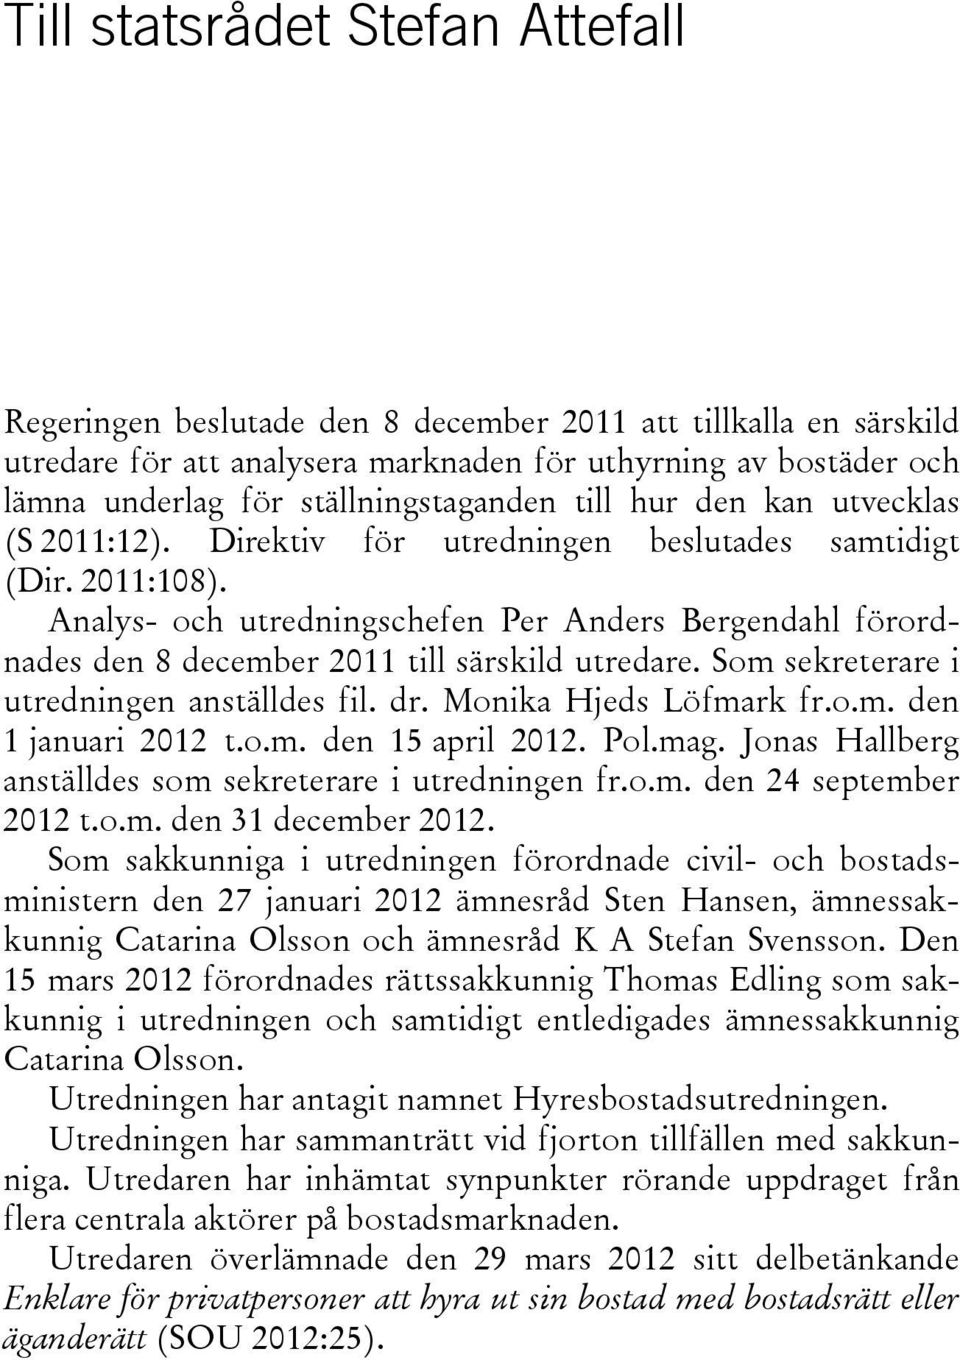 Analys- och utredningschefen Per Anders Bergendahl förordnades den 8 december 2011 till särskild utredare. Som sekreterare i utredningen anställdes fil. dr. Monika Hjeds Löfmark fr.o.m. den 1 januari 2012 t.